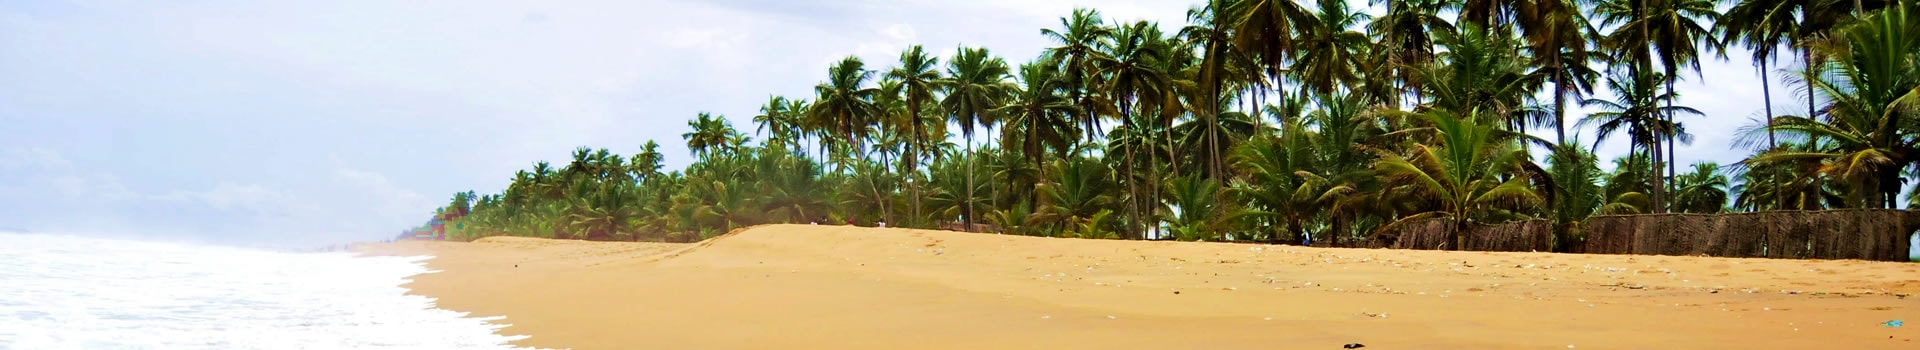 Costa Do Marfim